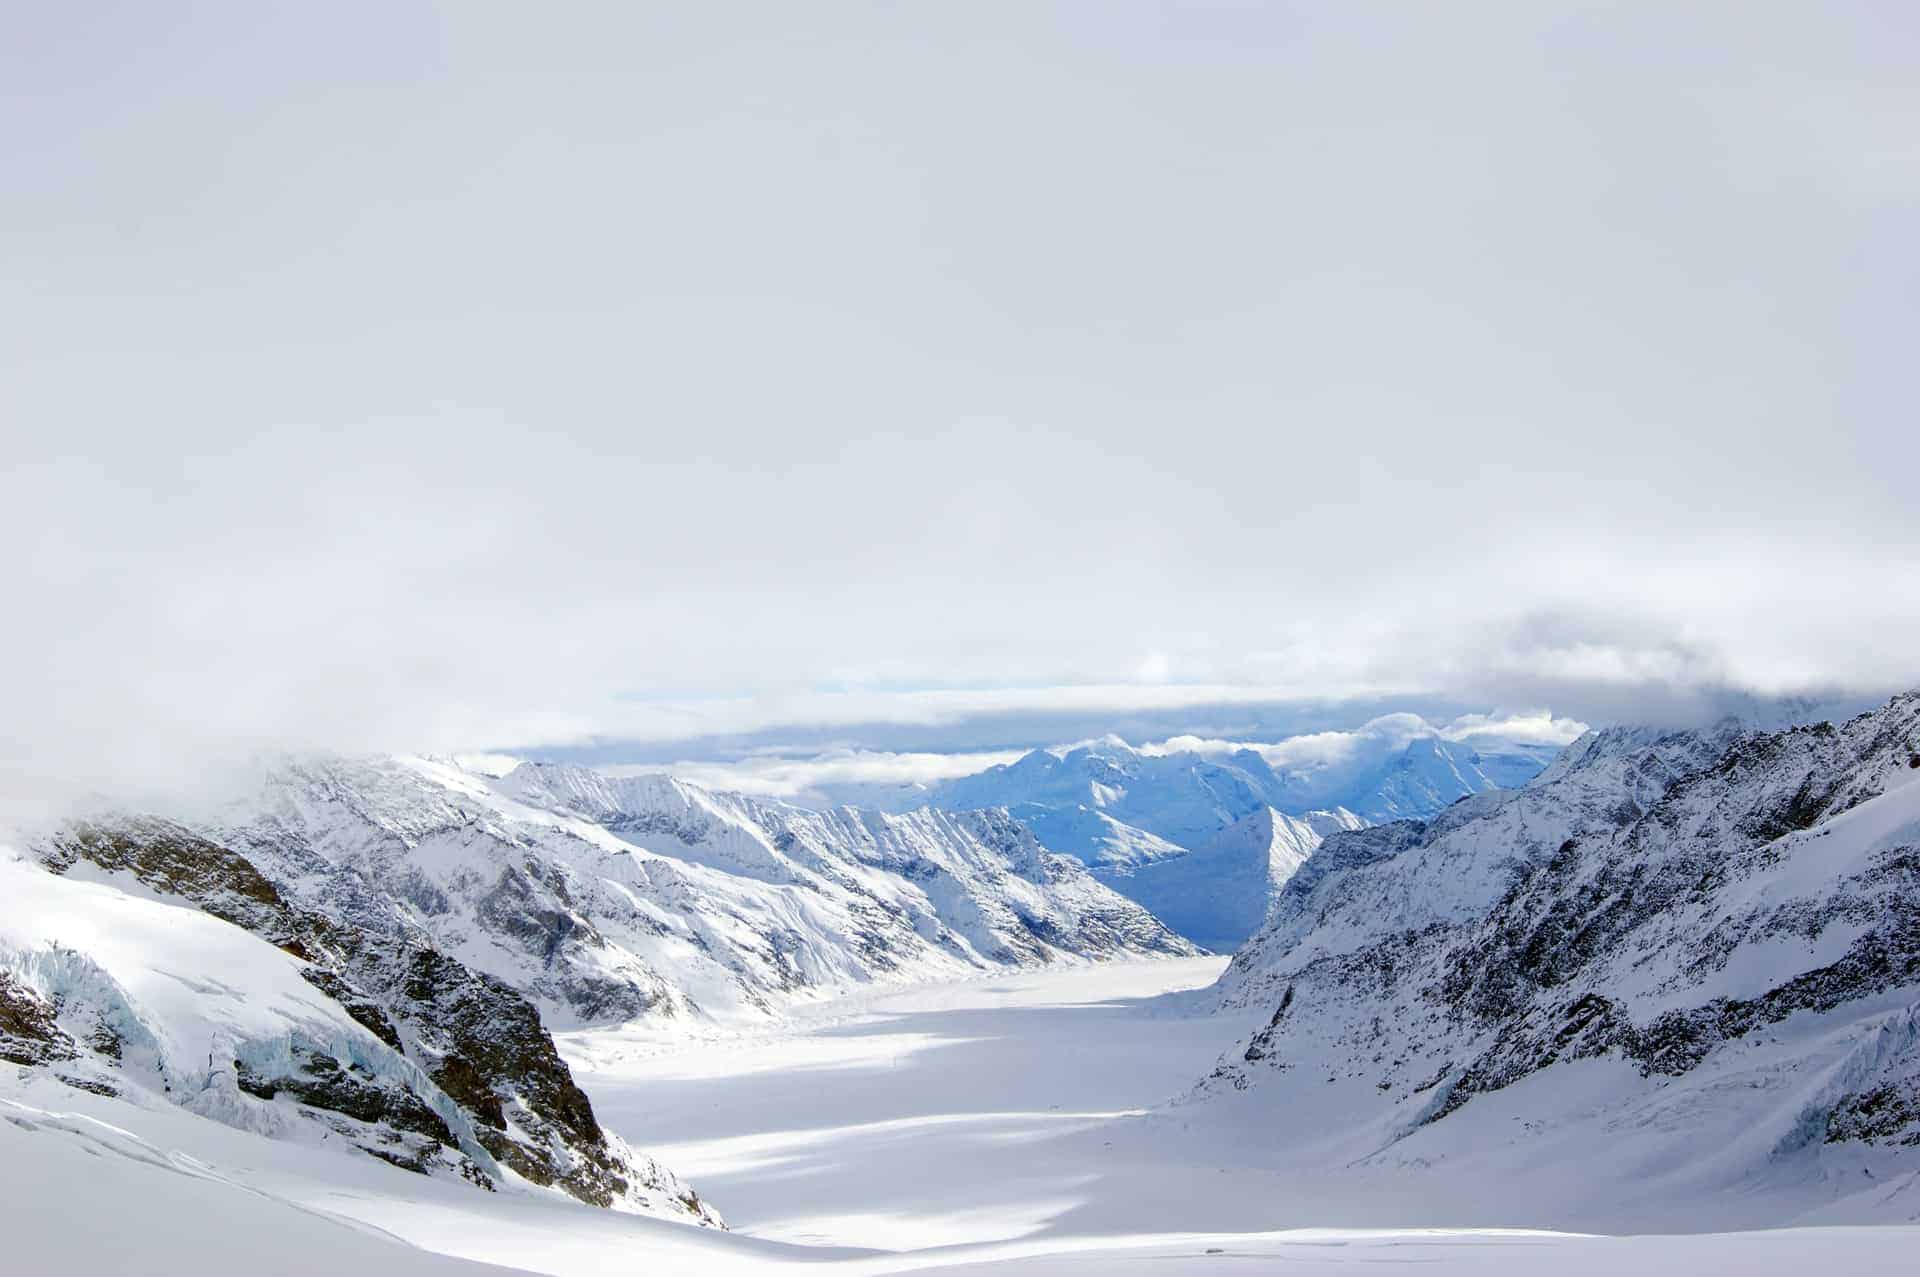 Jungfraujoch View